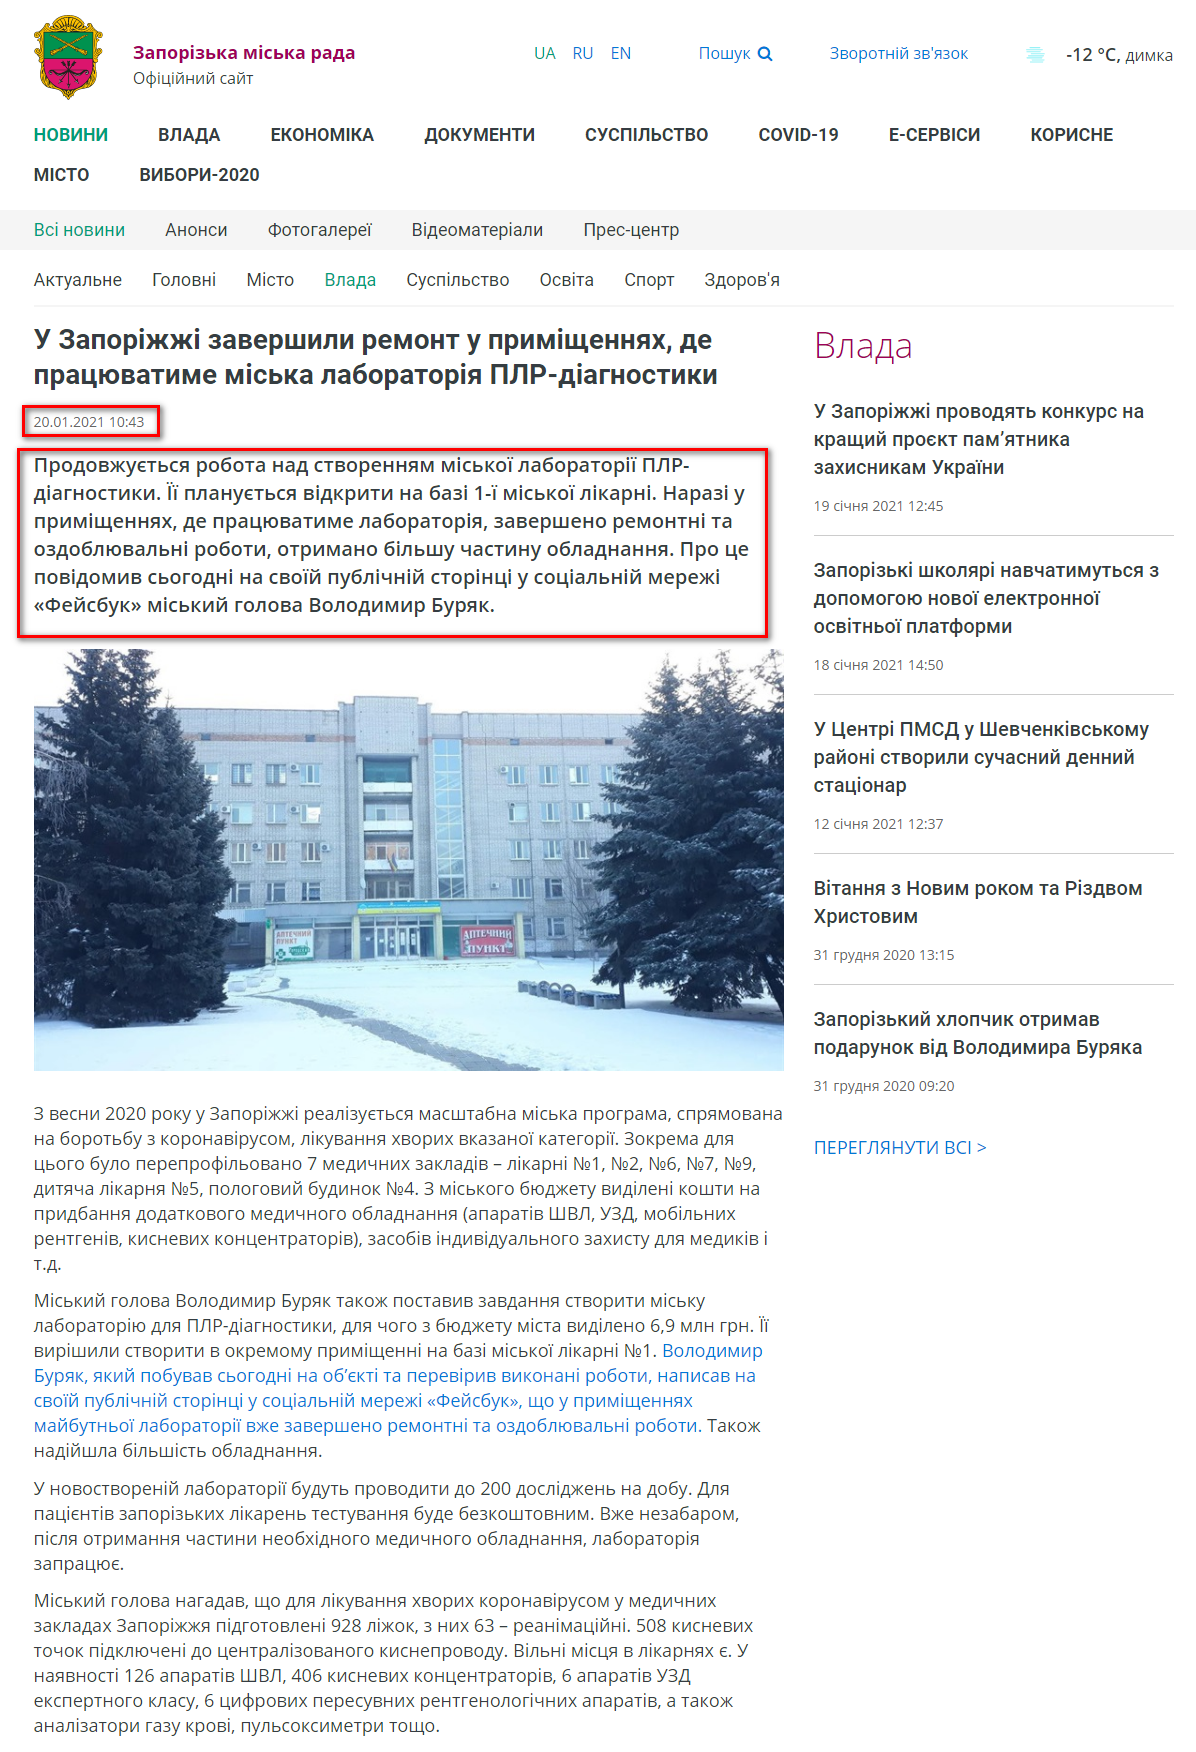 https://zp.gov.ua/uk/articles/item/9092/u-zaporizhzhi-zavershili-remont-u-primischennyah-de-pracyuvatime-miska-laboratoriya-plr-diagnostiki